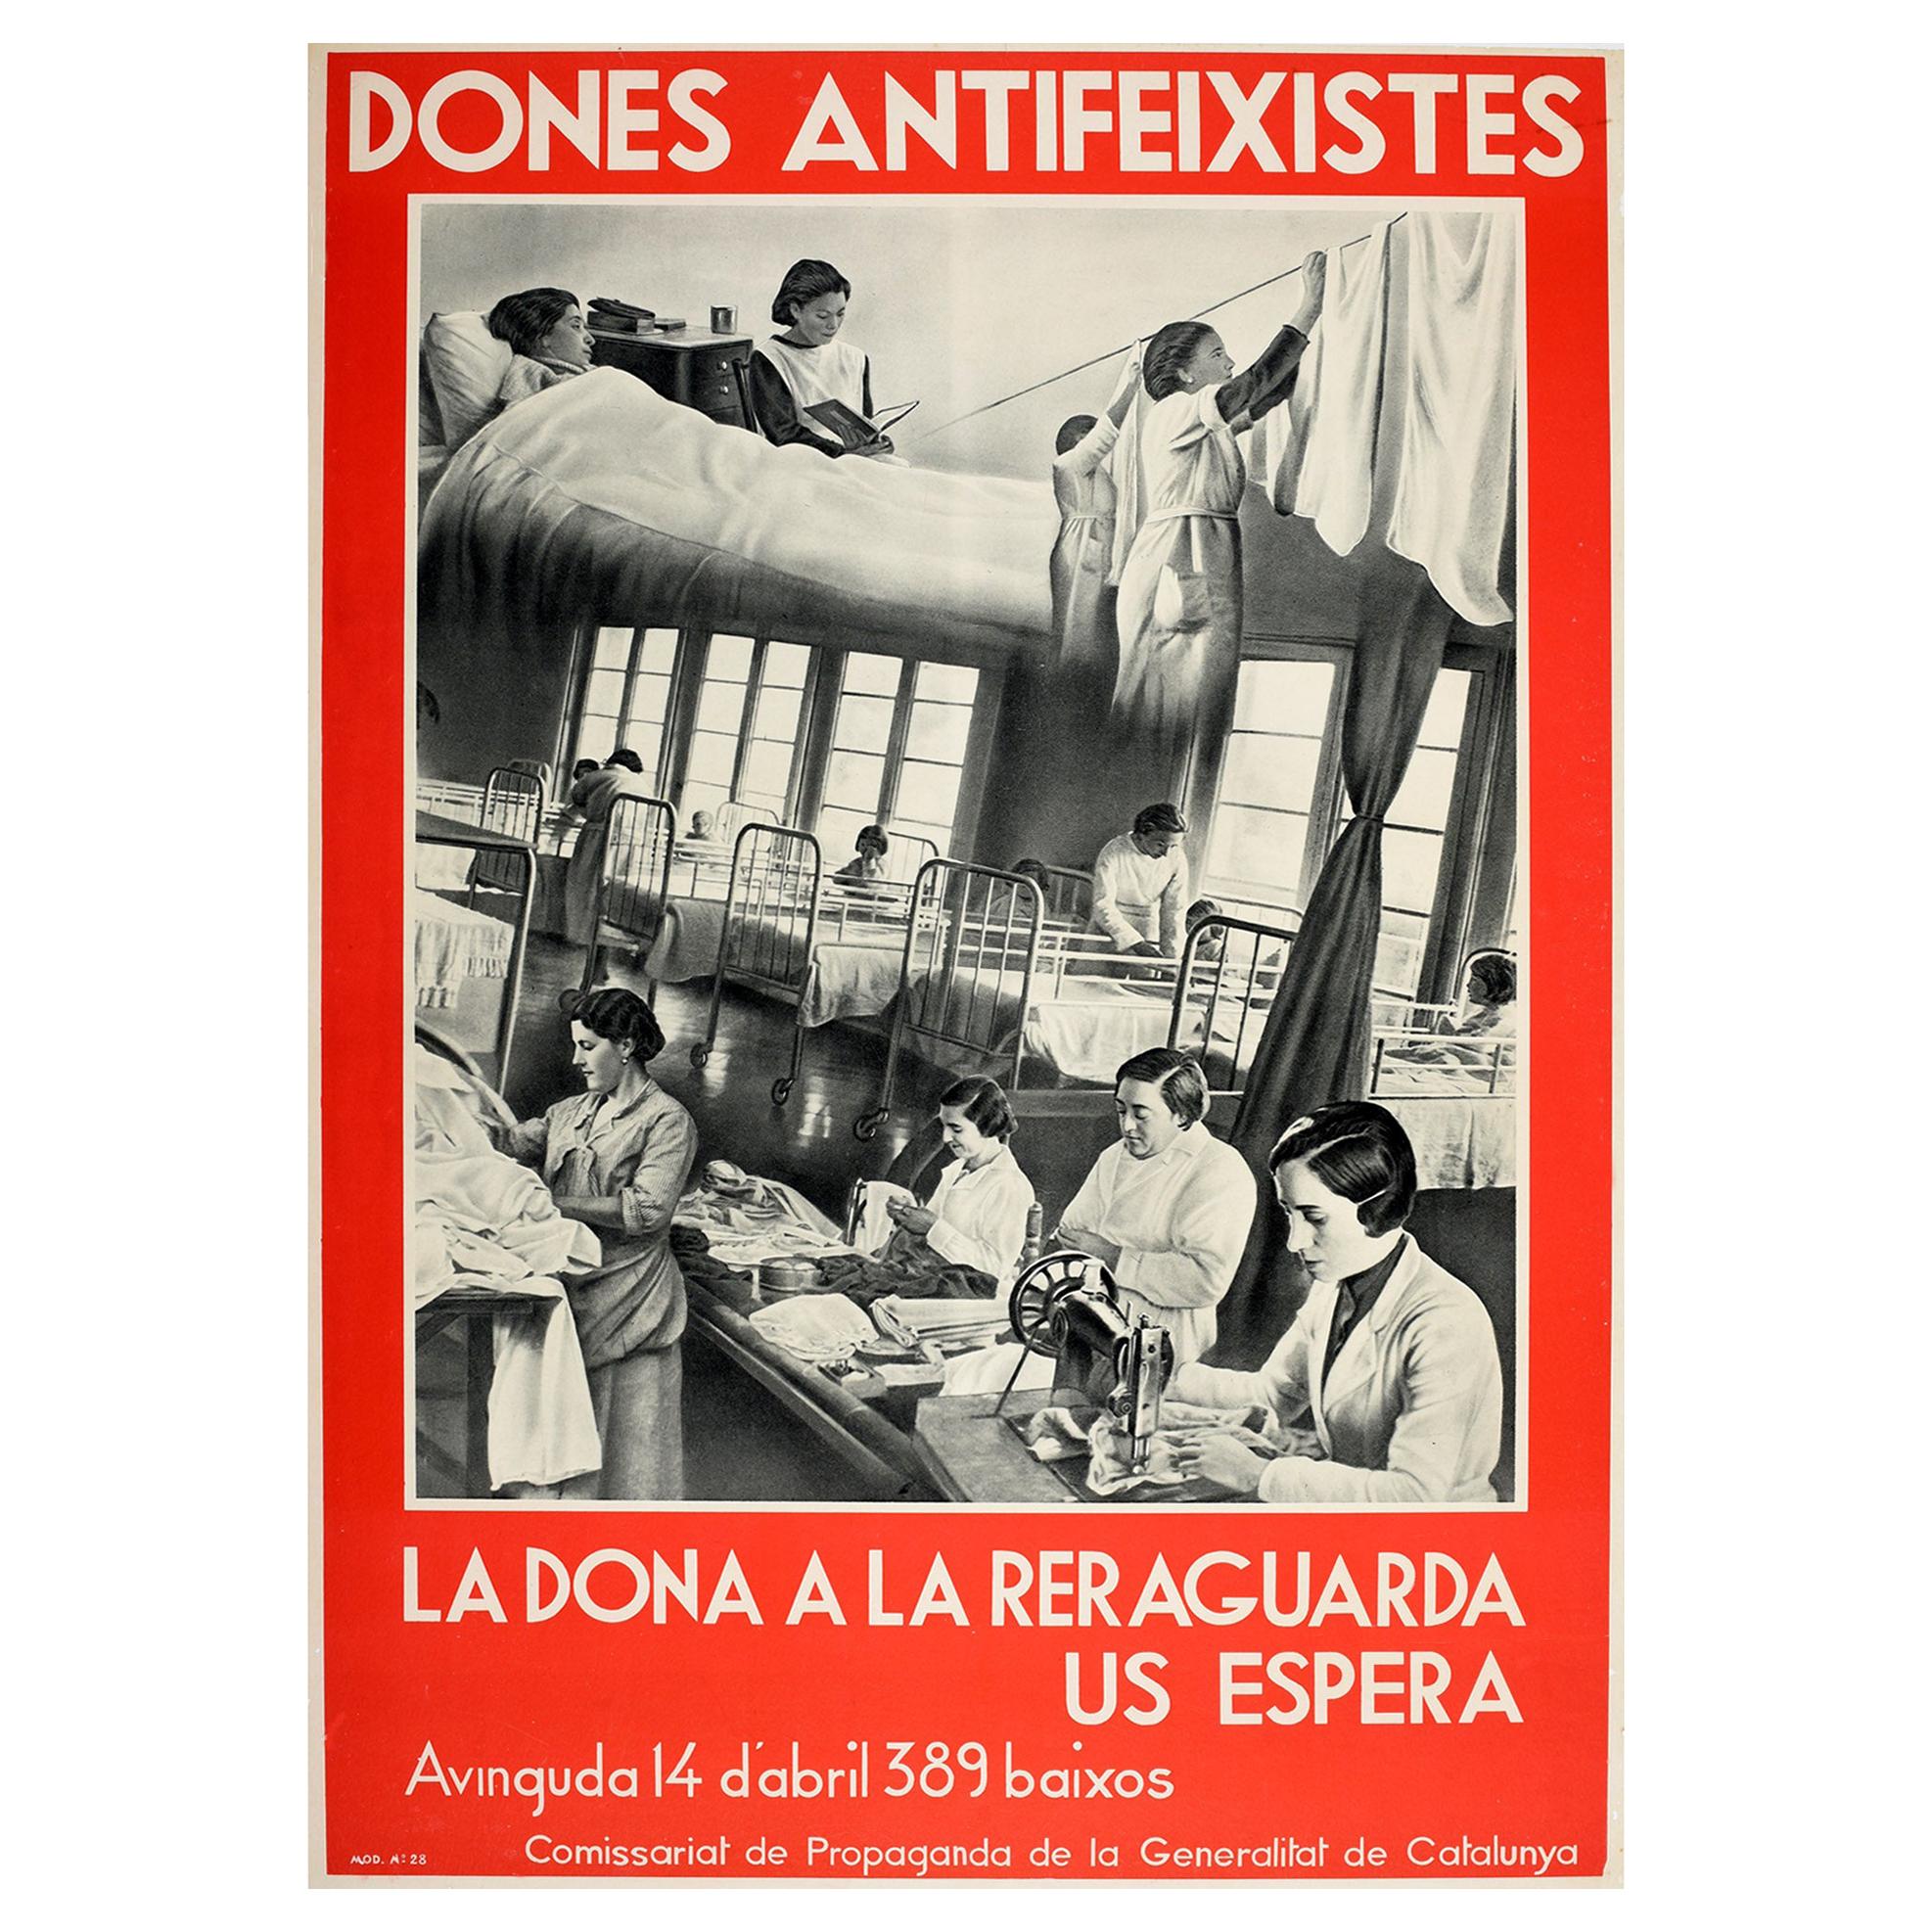 Originales Vintage-Poster aus dem spanischen Bürgerkrieg, Dones Antifeixistes, Antifaschisten, Frauen